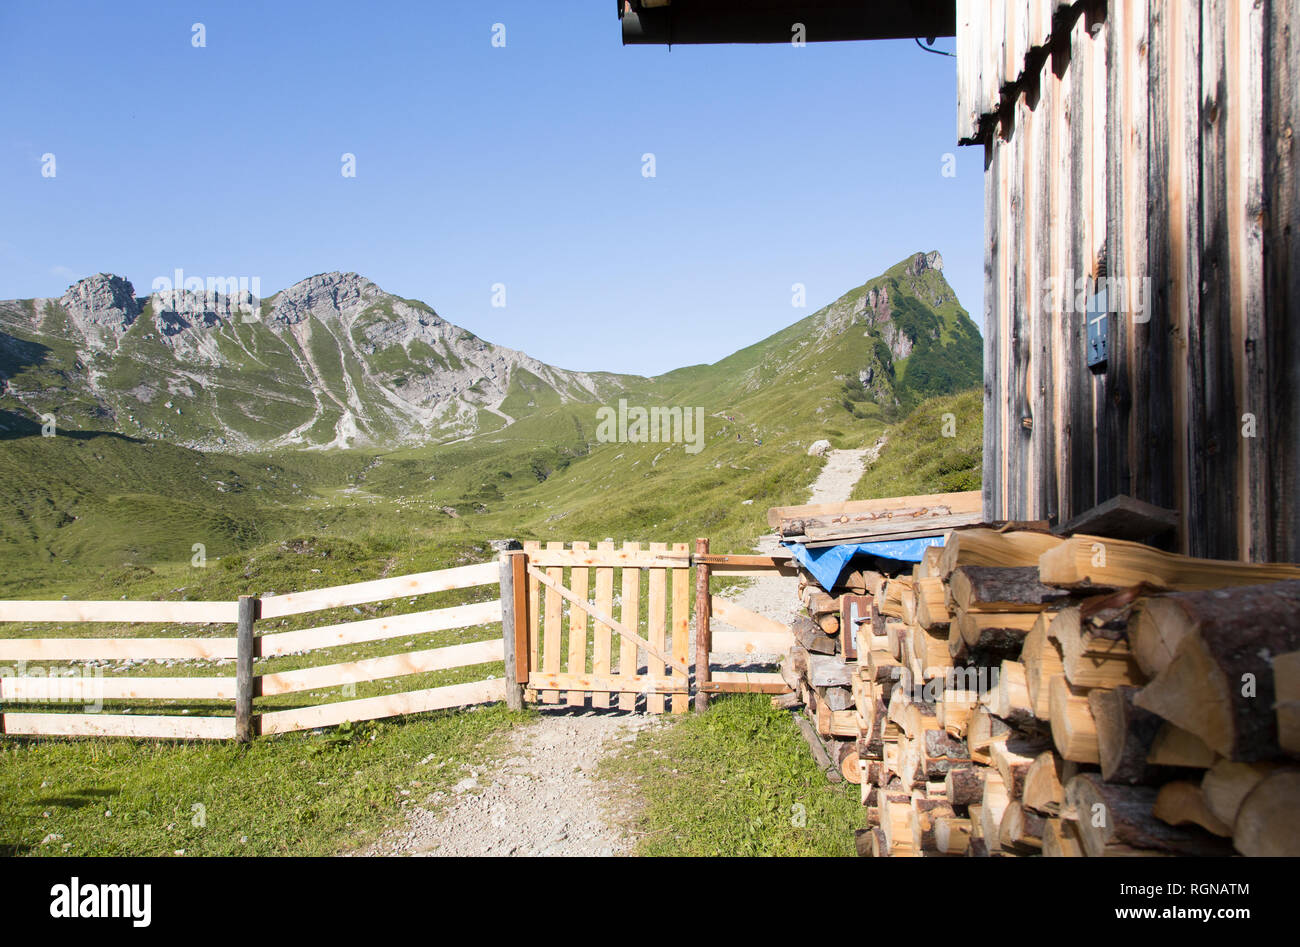 Austria, Alto Adige, capanna in legno, registri staccionata in legno, percorso Foto Stock